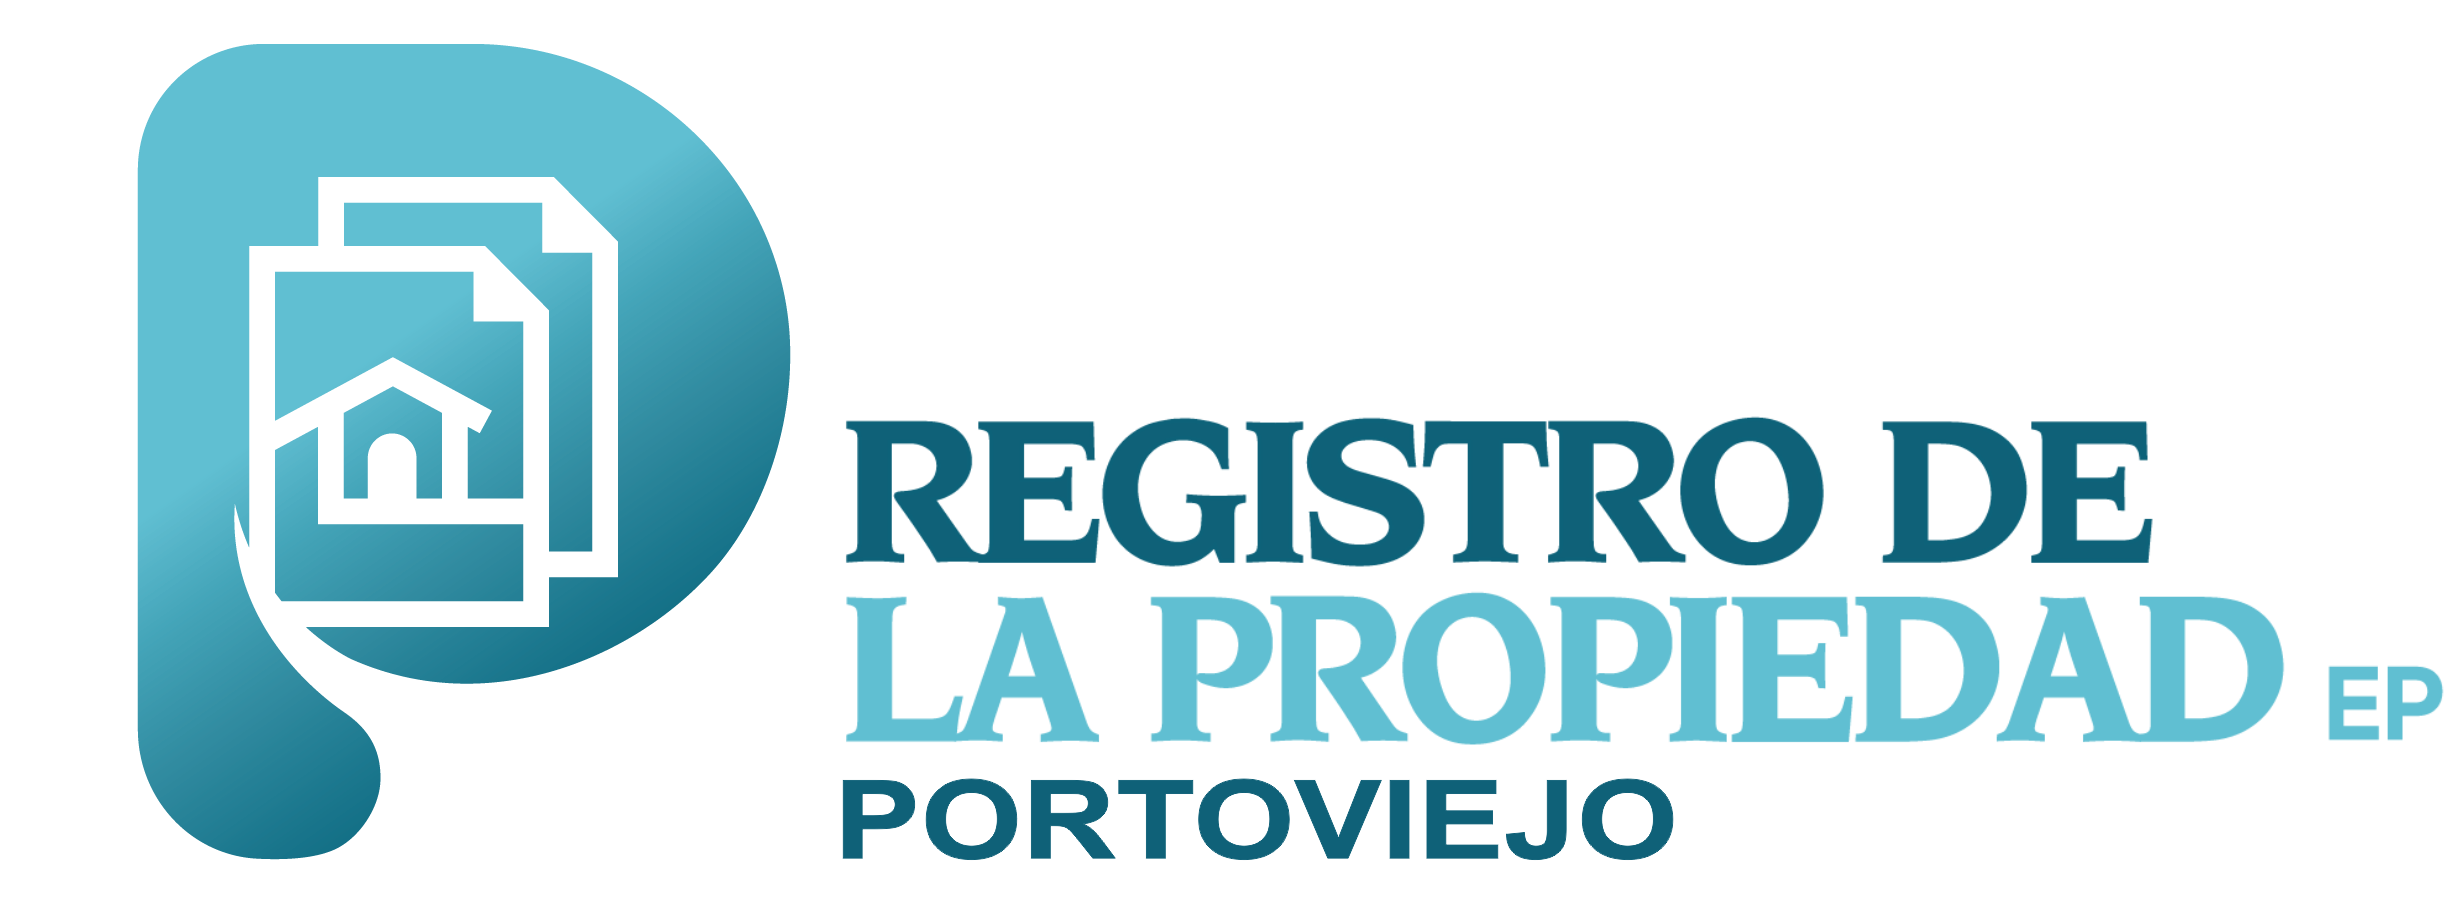 Registro de la Propiedad Portoviejo